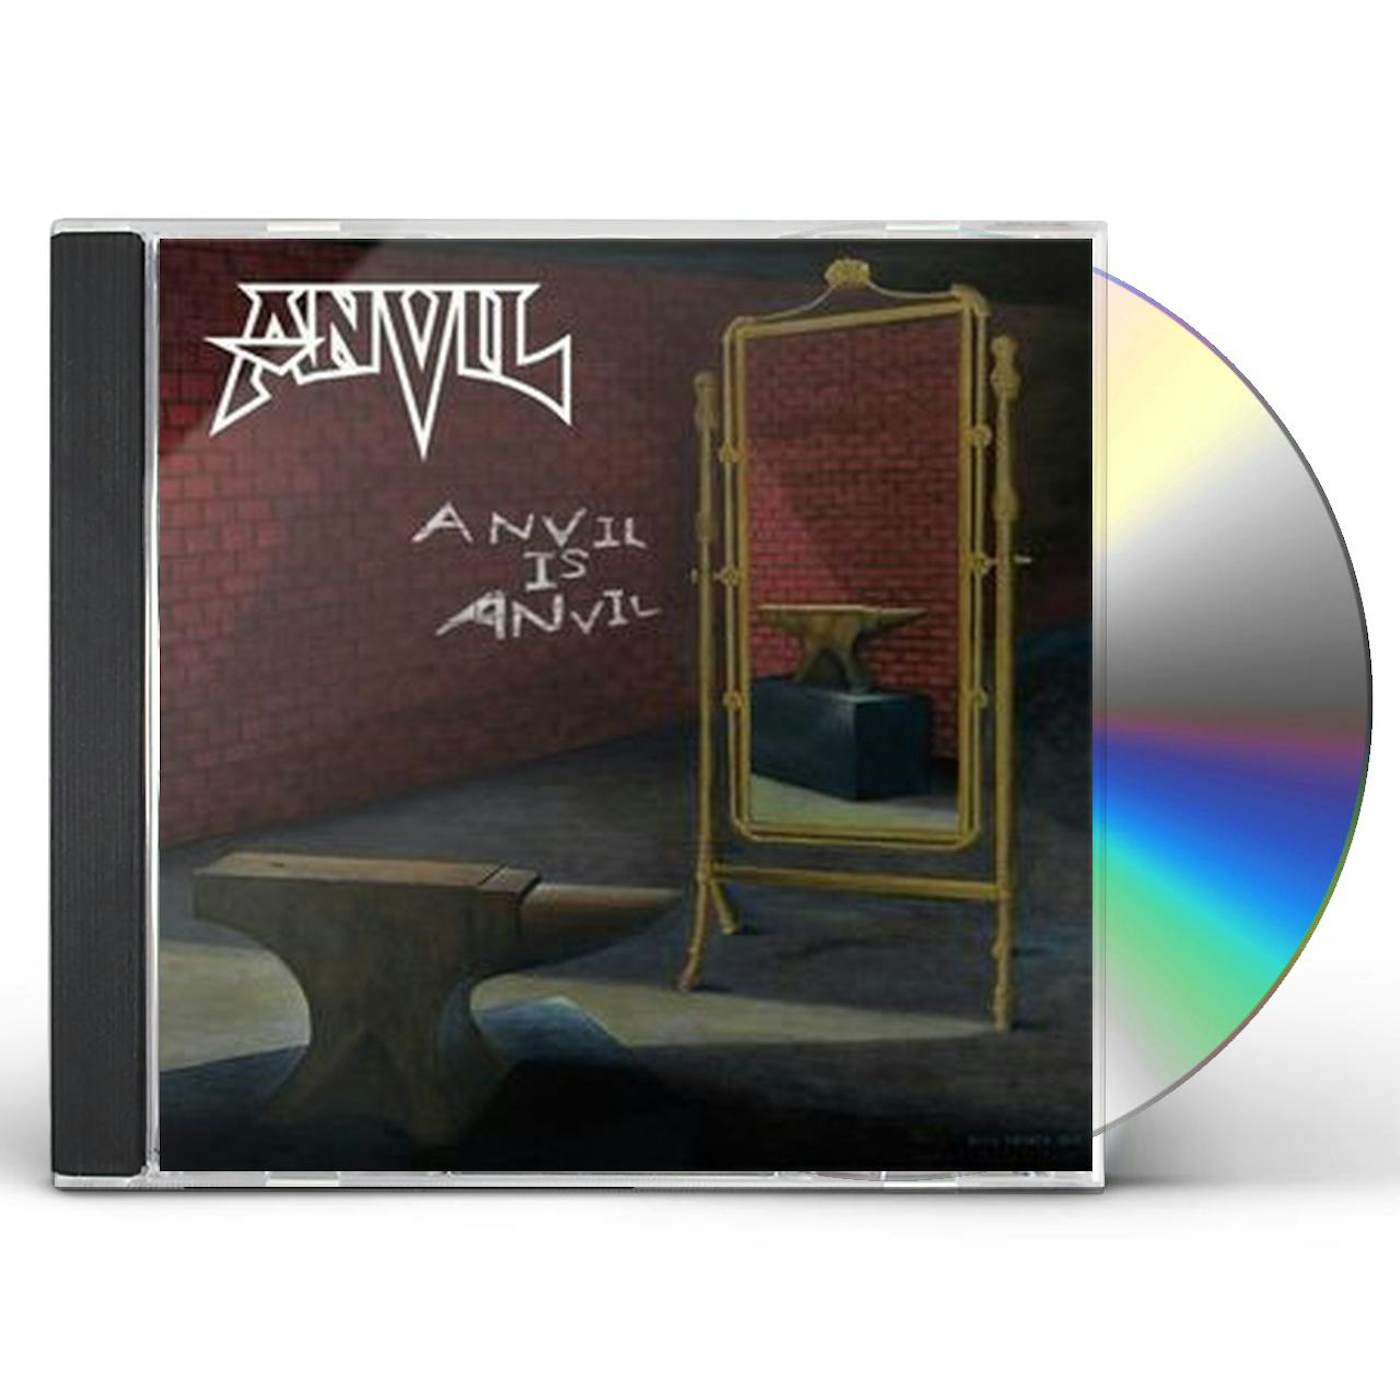 ANVIL IS ANVIL CD